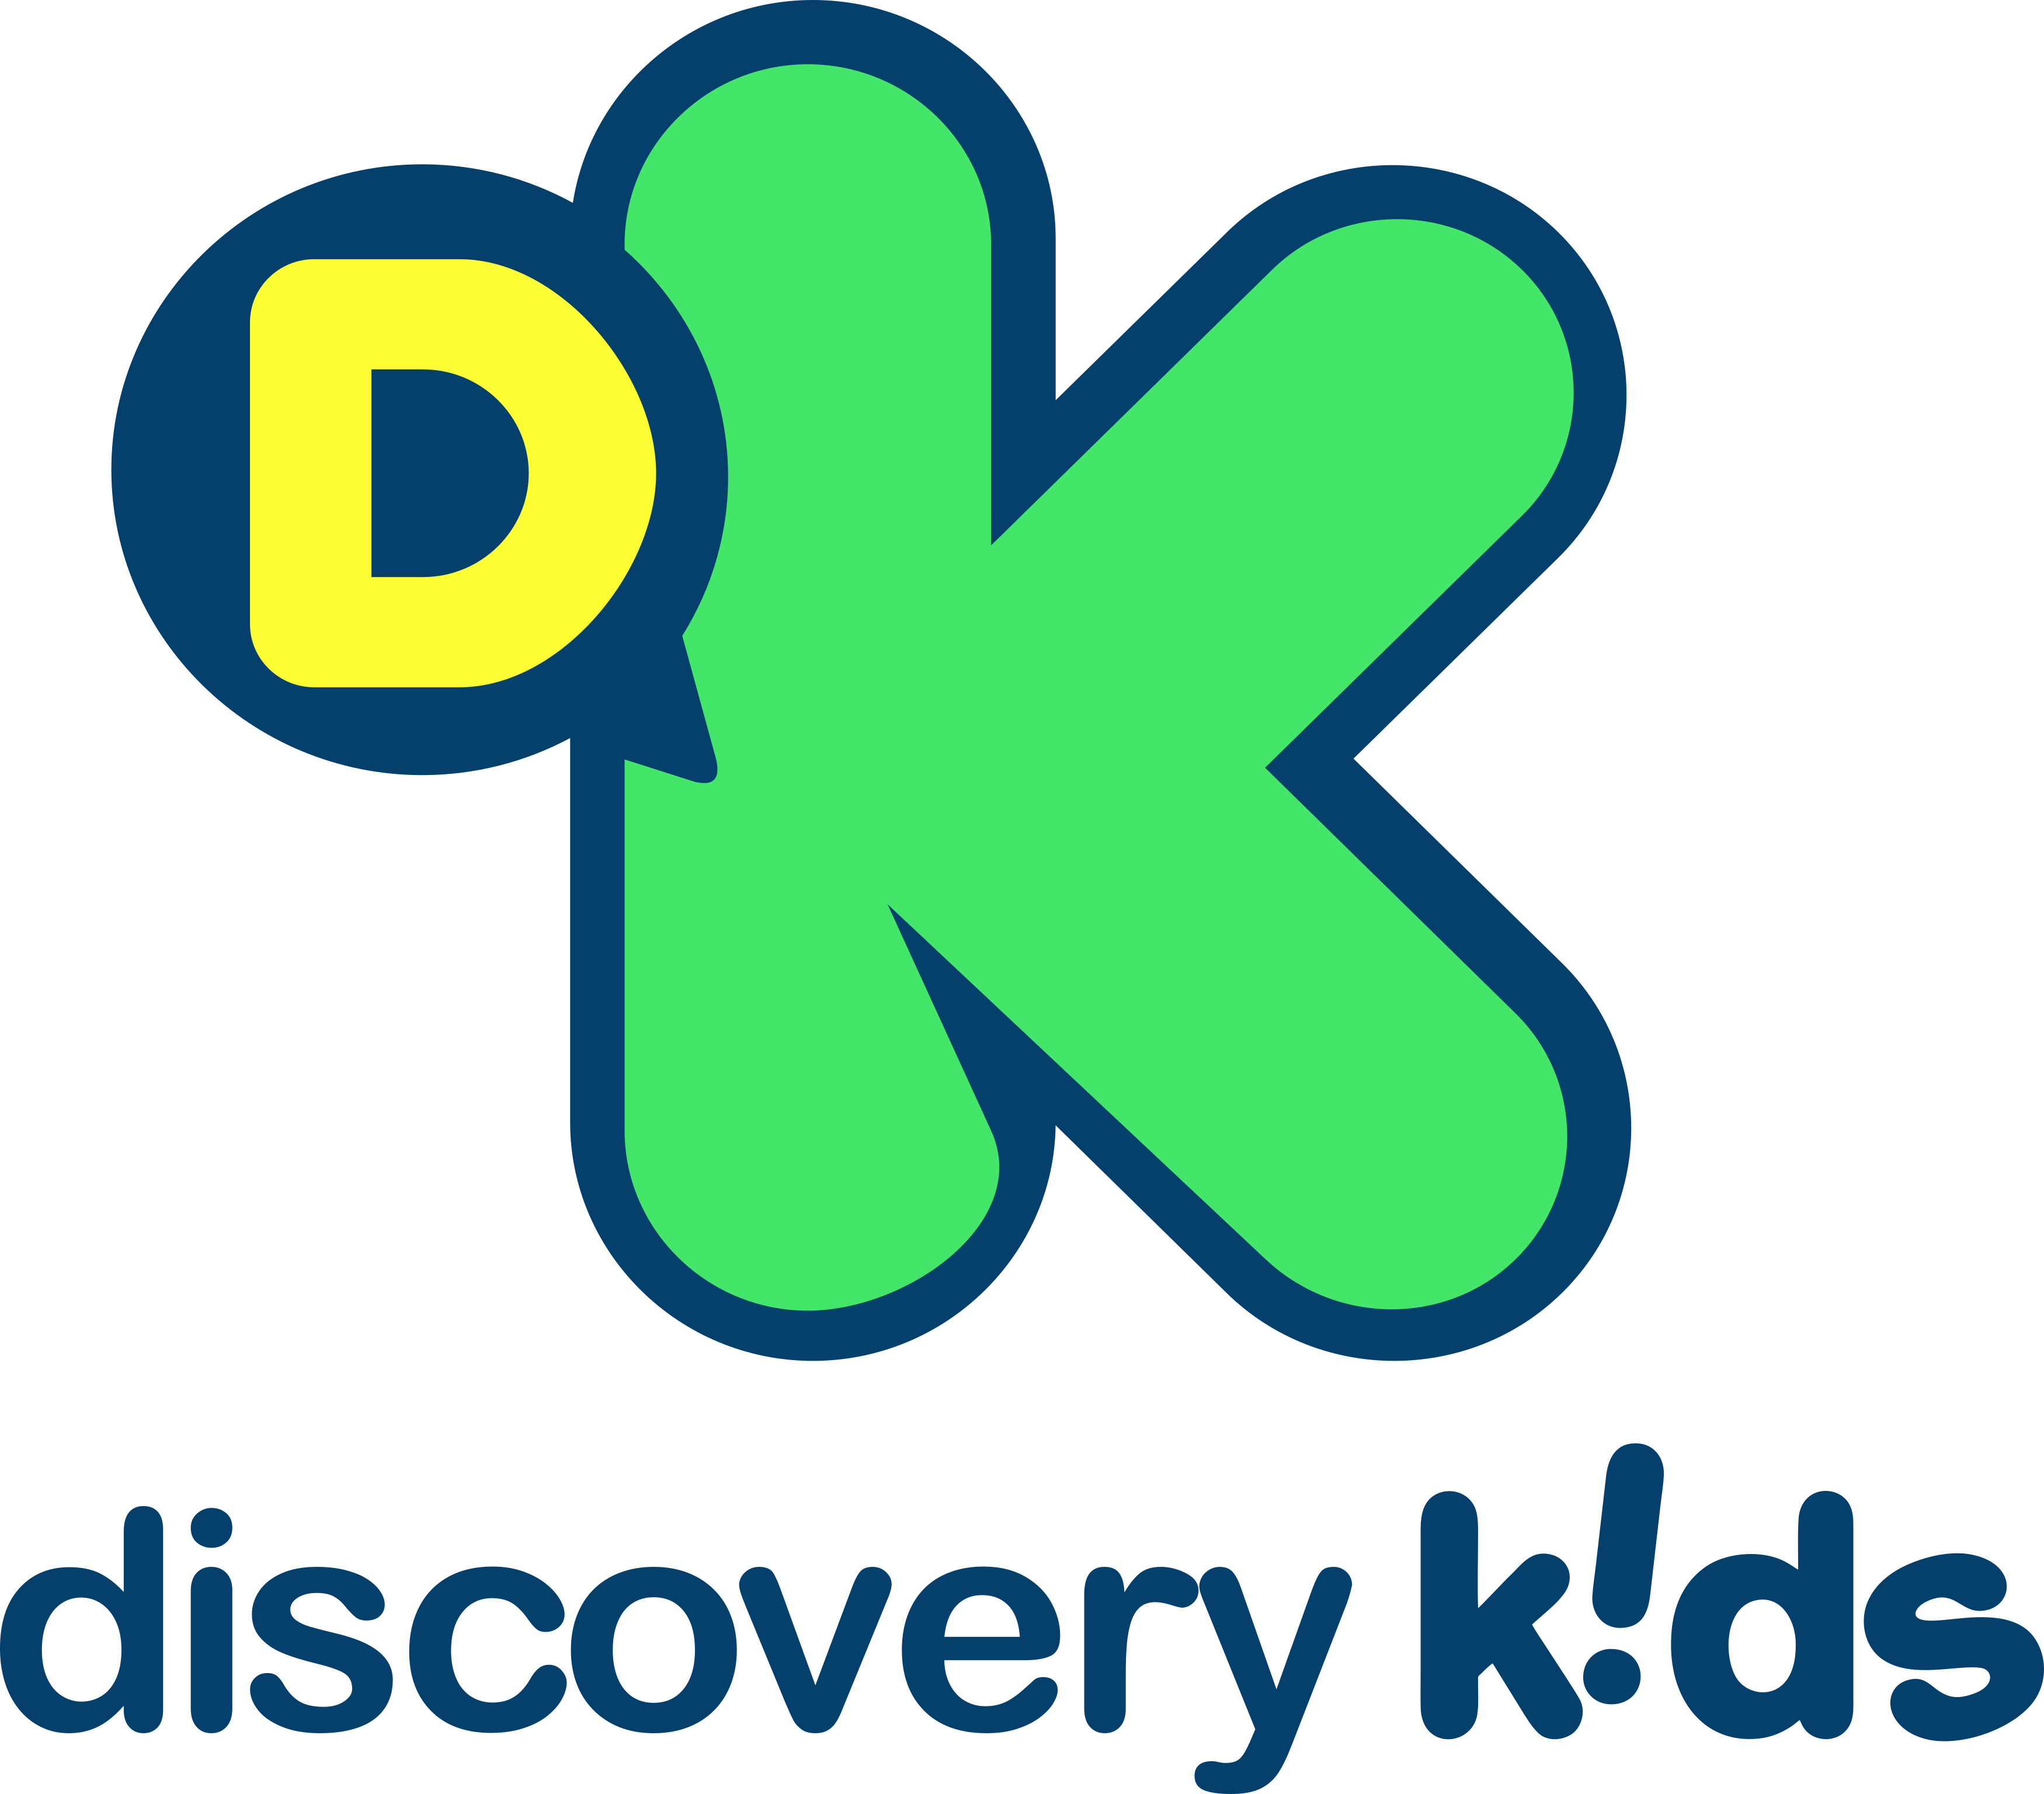 Imagem do Discovery Kids